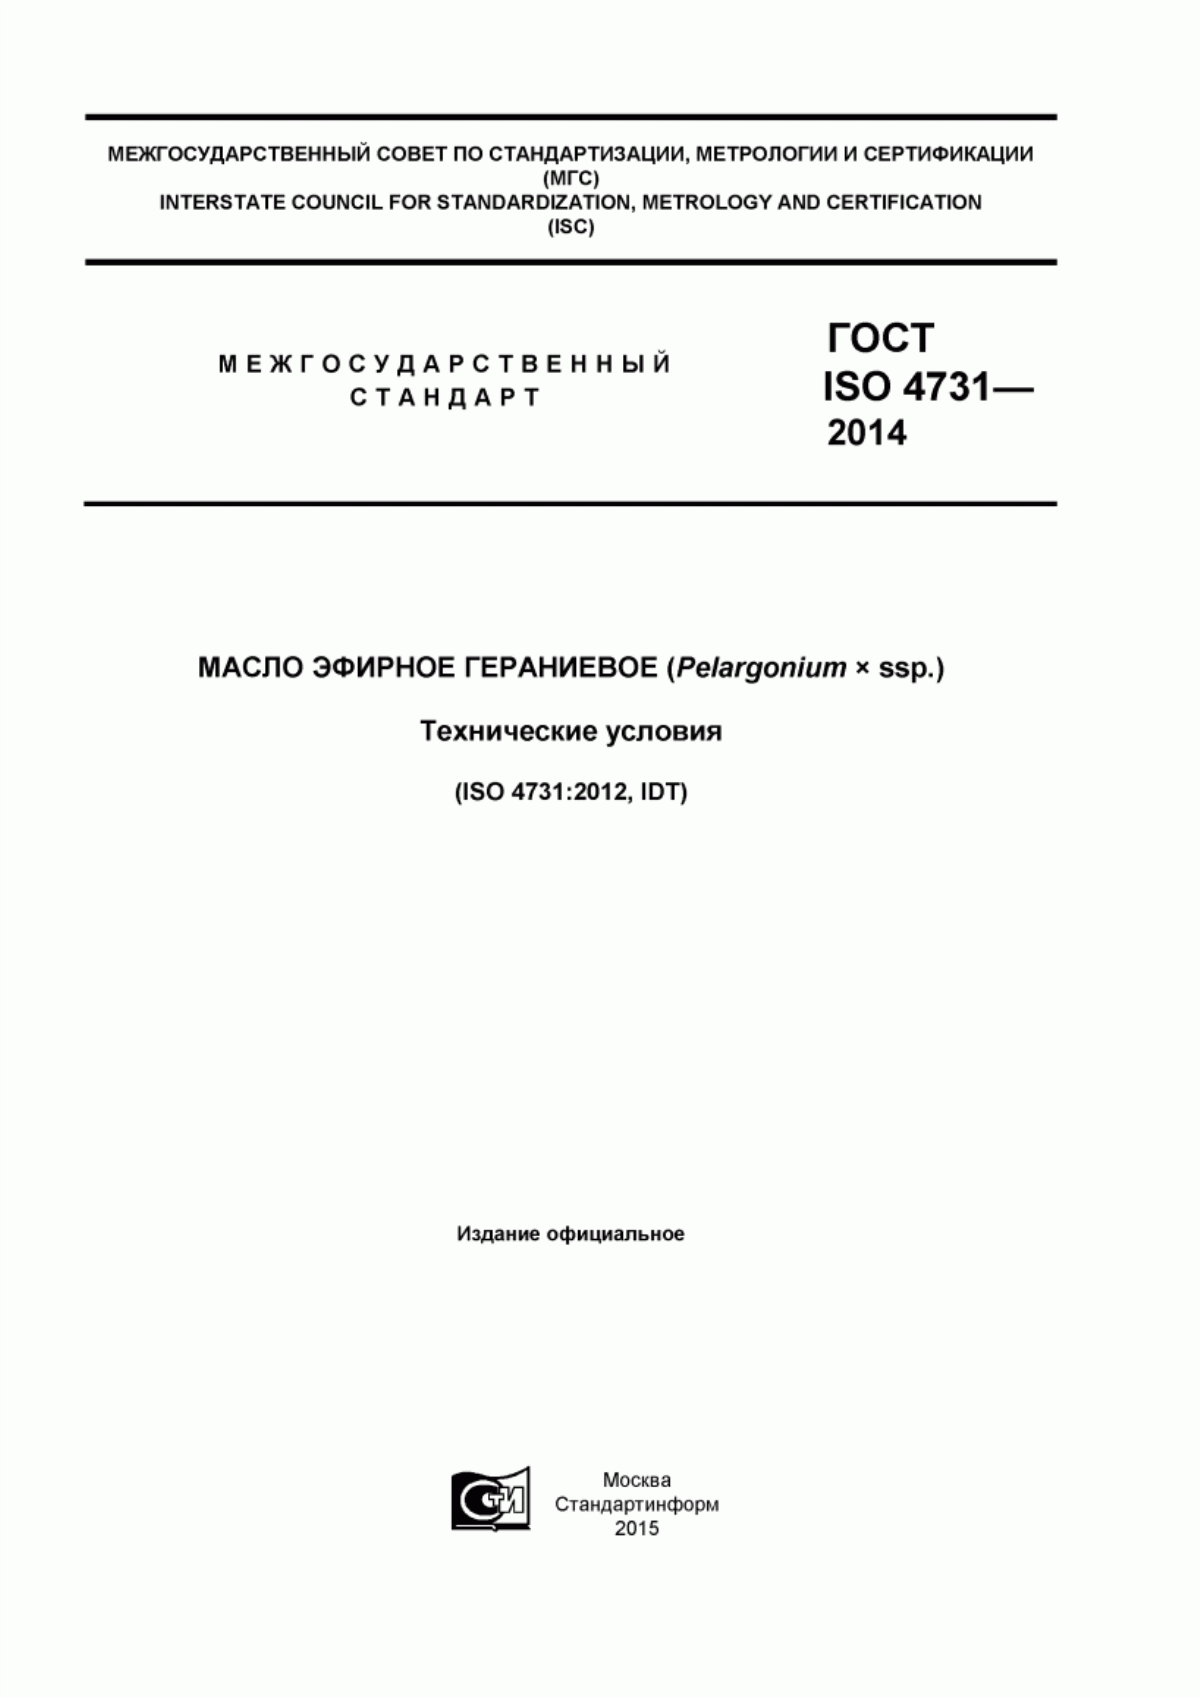 ГОСТ ISO 4731-2014 Масло эфирное гераниевое (Pelargonium x ssp.). Технические условия